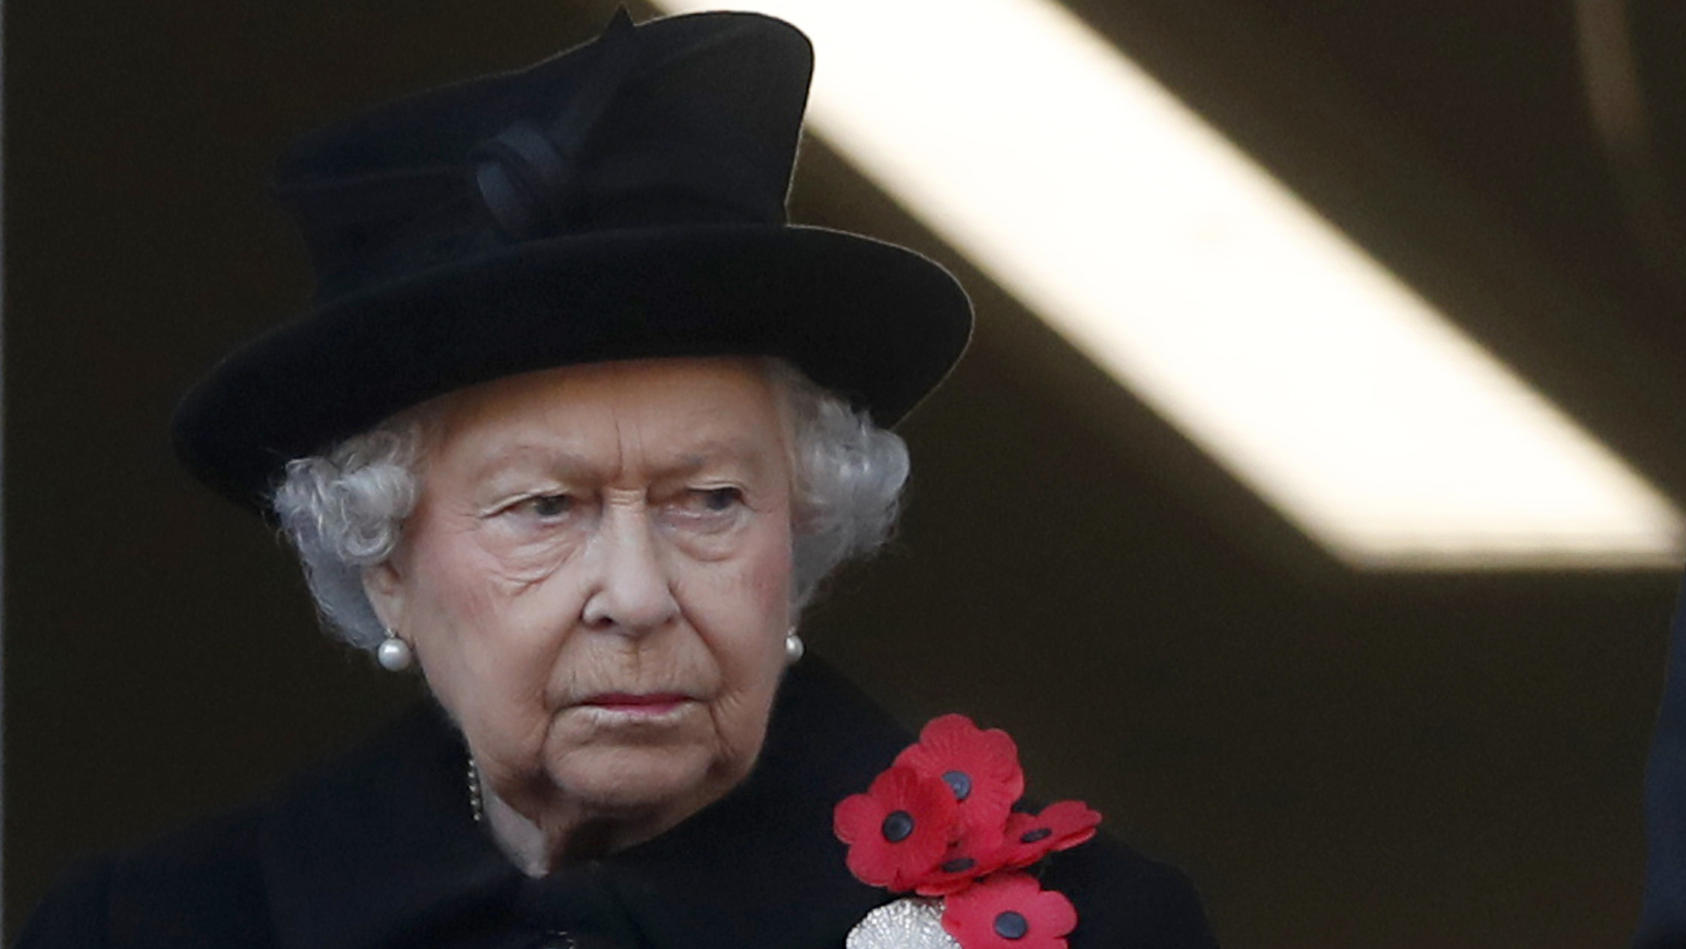 ARCHIV - 11.11.2018, Großbritannien, London: Die britische Königin Elizabeth II. nimmt an der Gedenkfeier zum Volkstrauertag (Remembrance Sunday) auf dem Cenotaph in London teil. Die britische Königin Elizabeth II. hat ihre Teilnahme am traditionelle